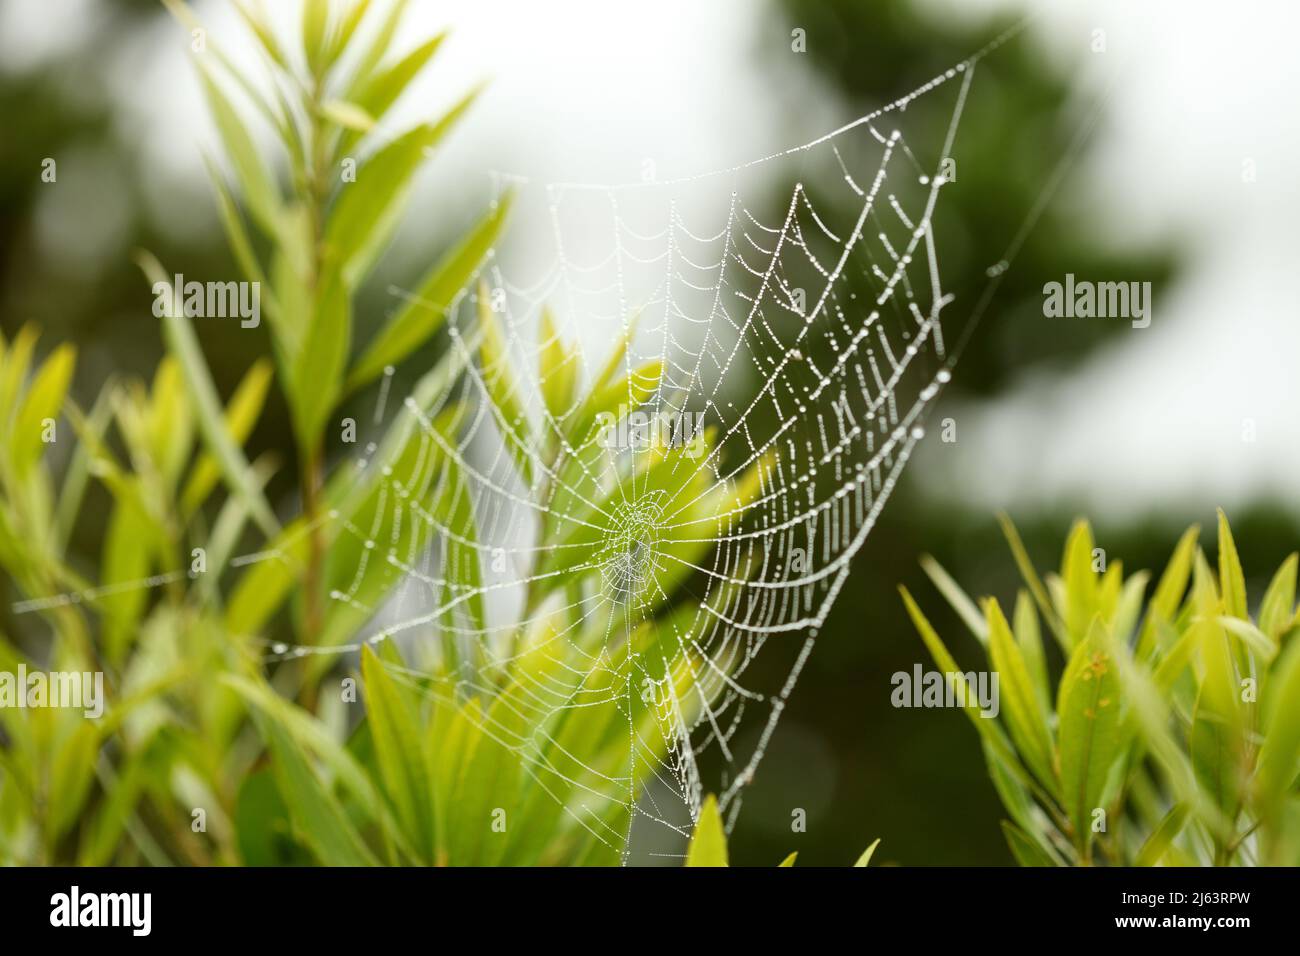 Am frühen Morgen tropft der Tau auf ein Spinnennetz.V Stockfoto